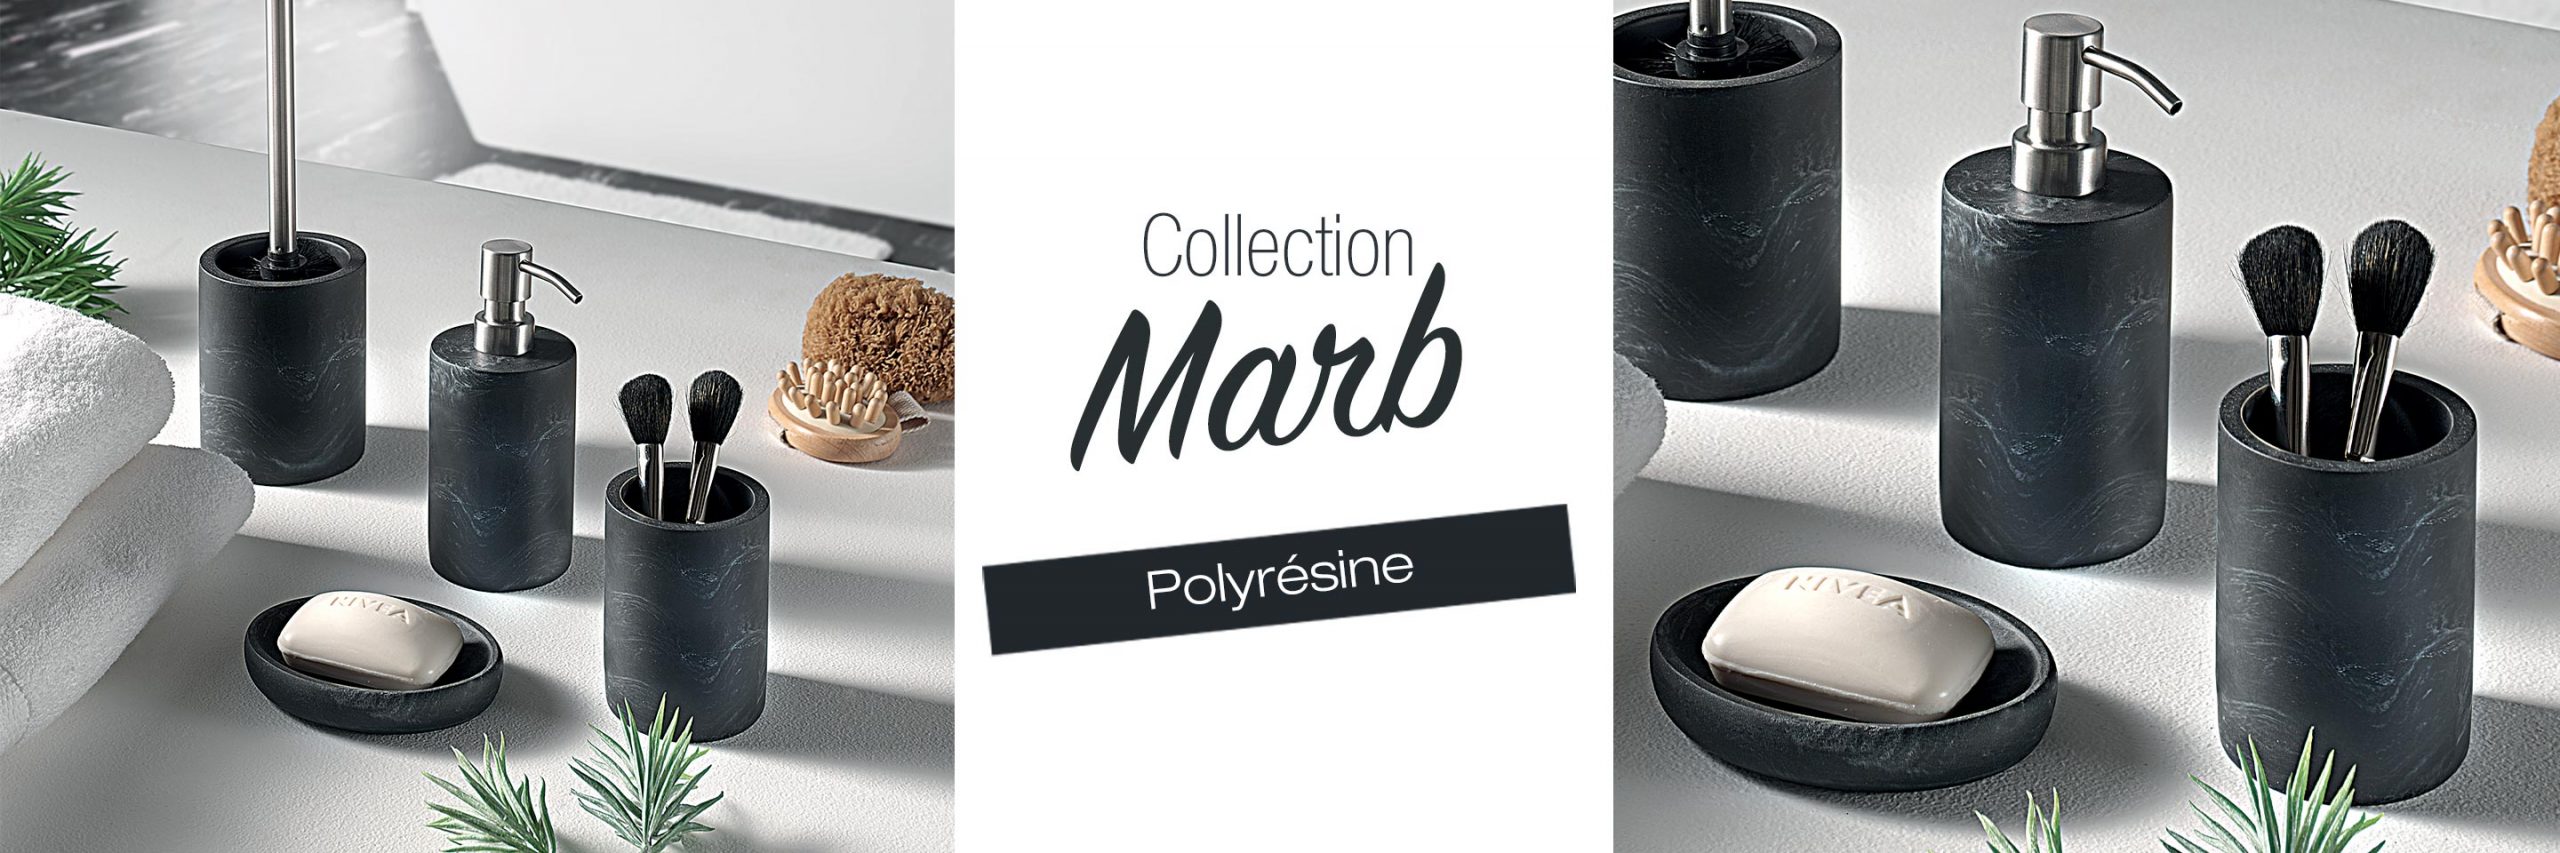 Collection MARB polyrésine noire